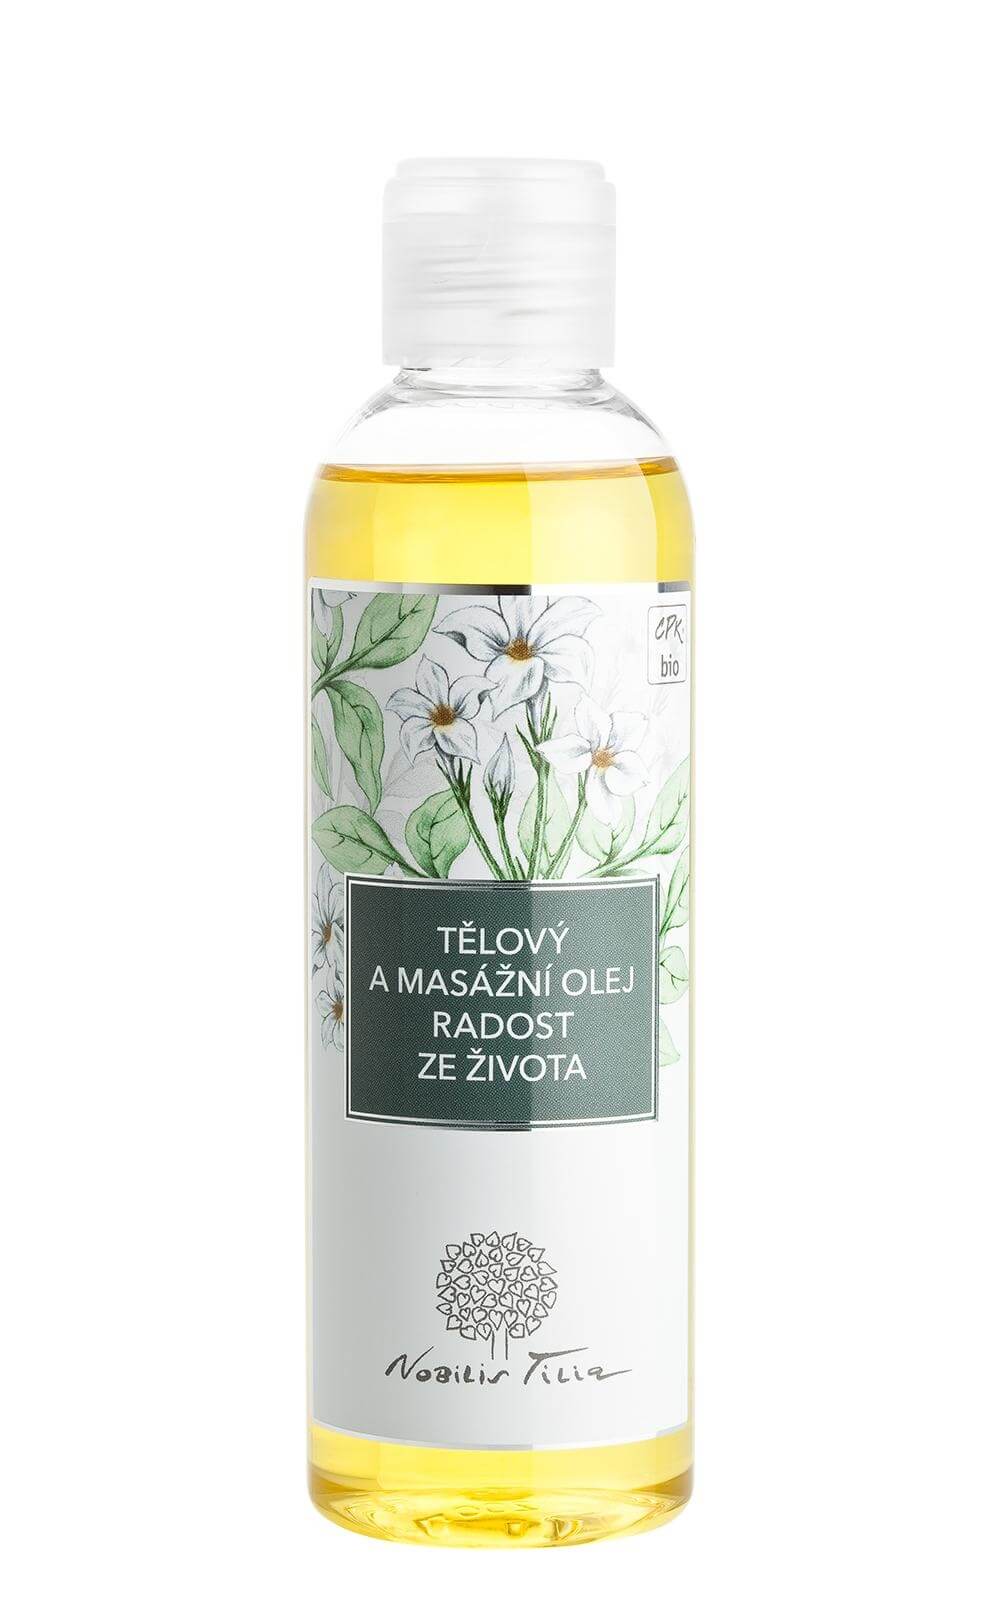 Zobrazit detail výrobku Nobilis Tilia Tělový a masážní olej Radost ze života 200 ml